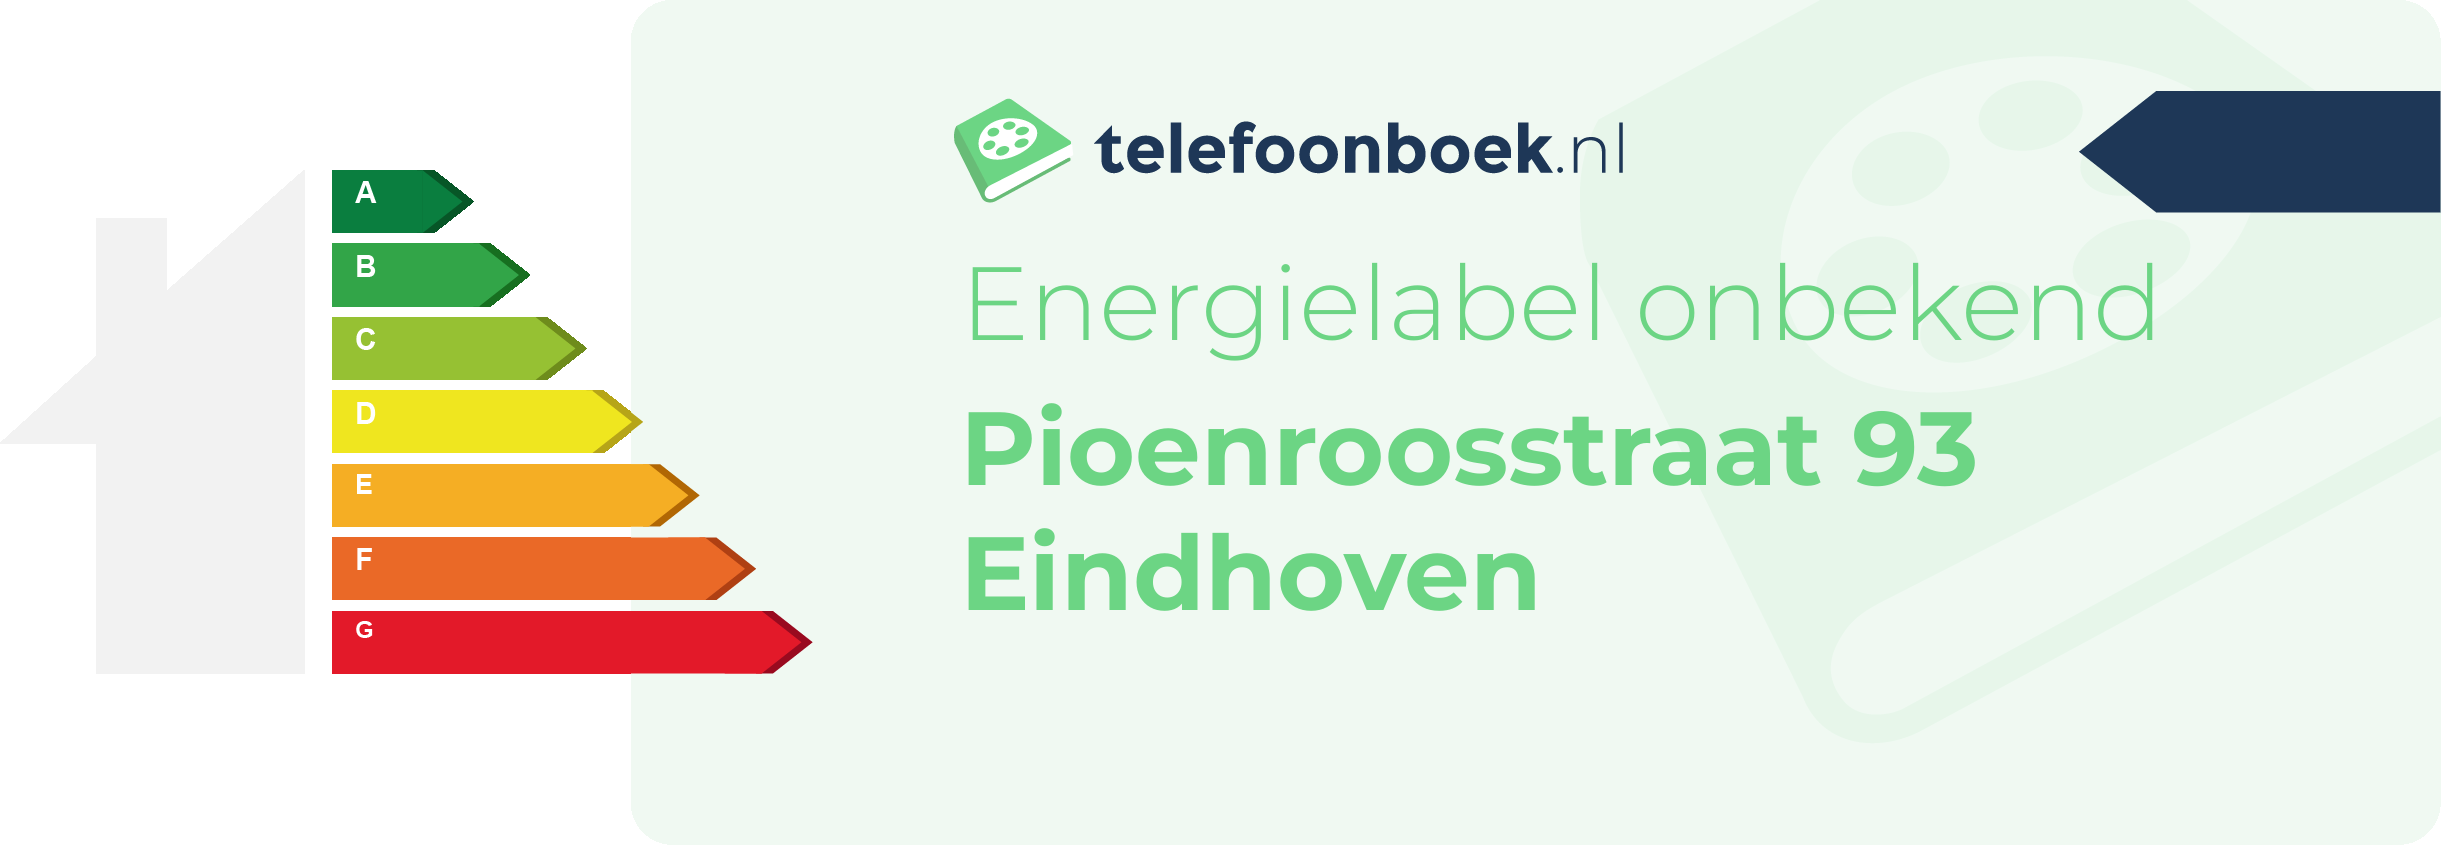 Energielabel Pioenroosstraat 93 Eindhoven